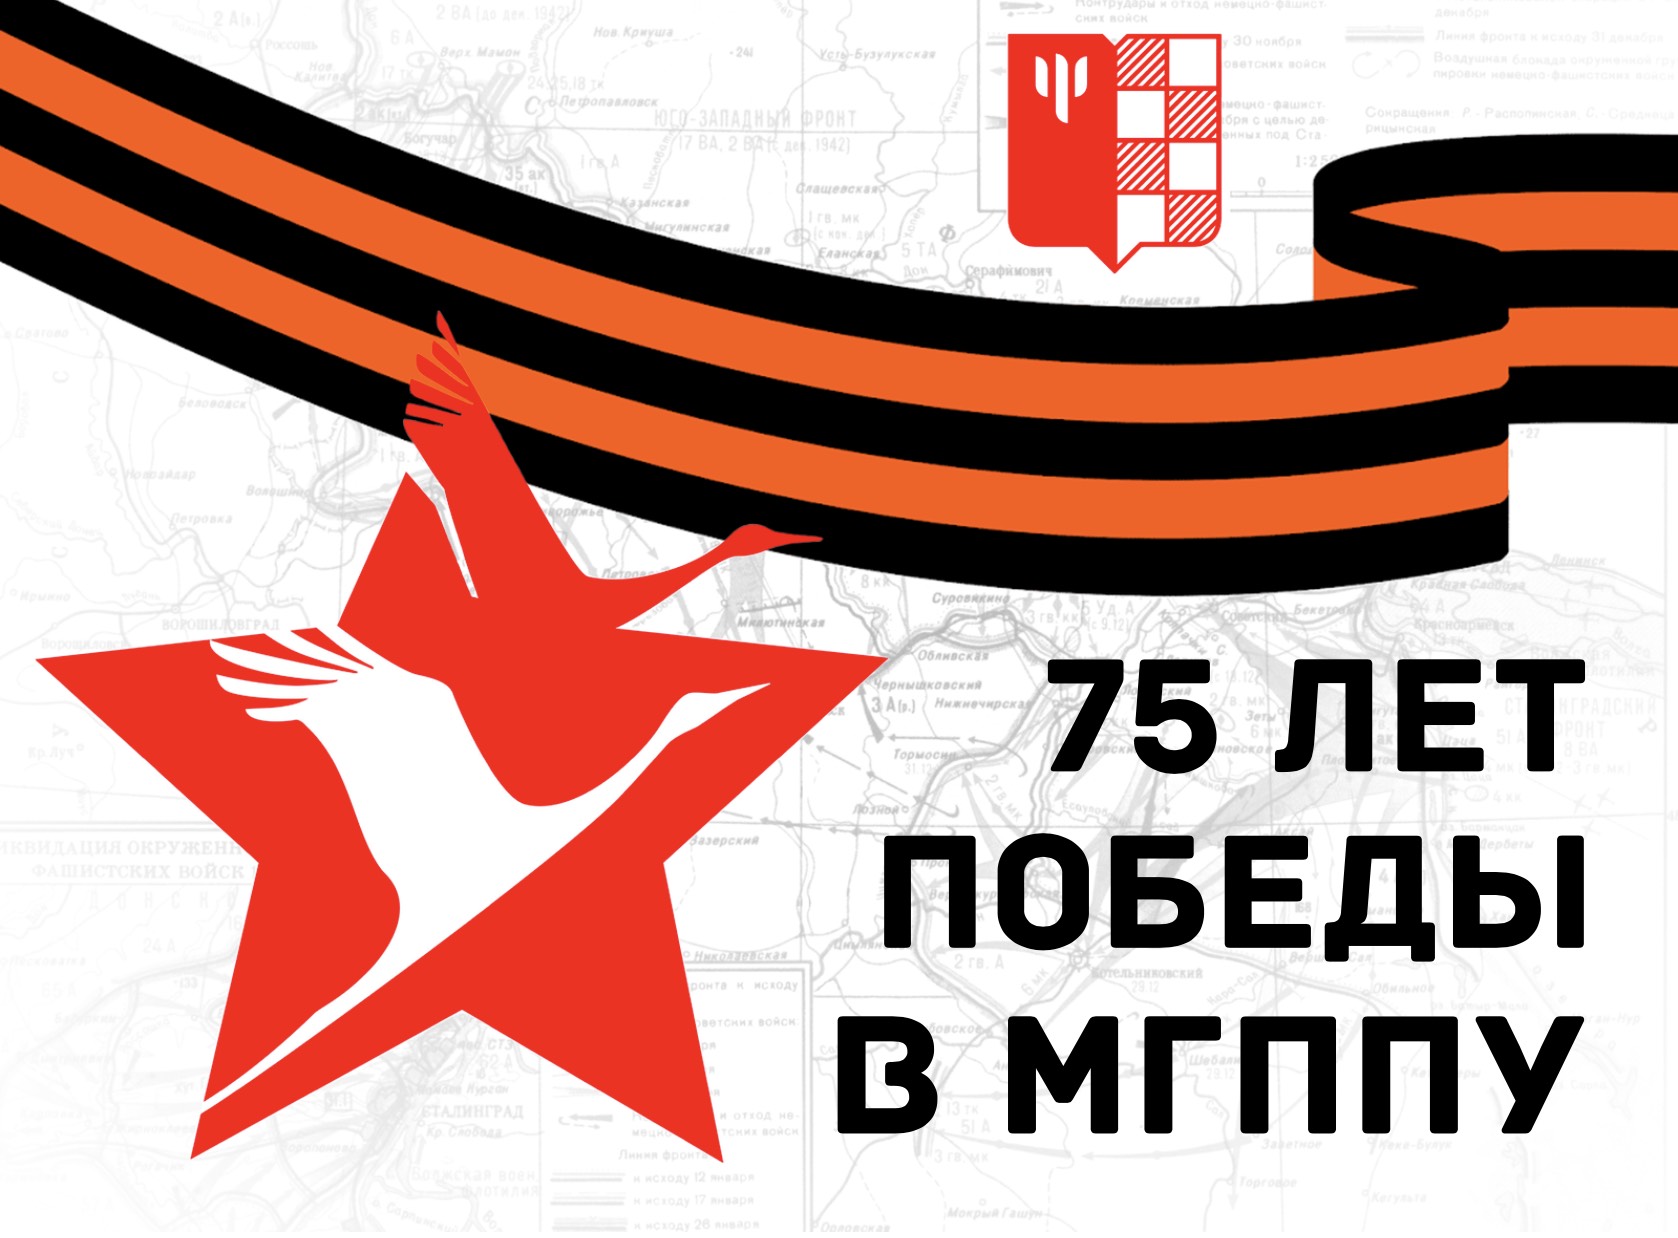 Мероприятия по празднованию 75-ой годовщины Победы в Великой Отечественной войне, планируемых к проведению в ближайшее время